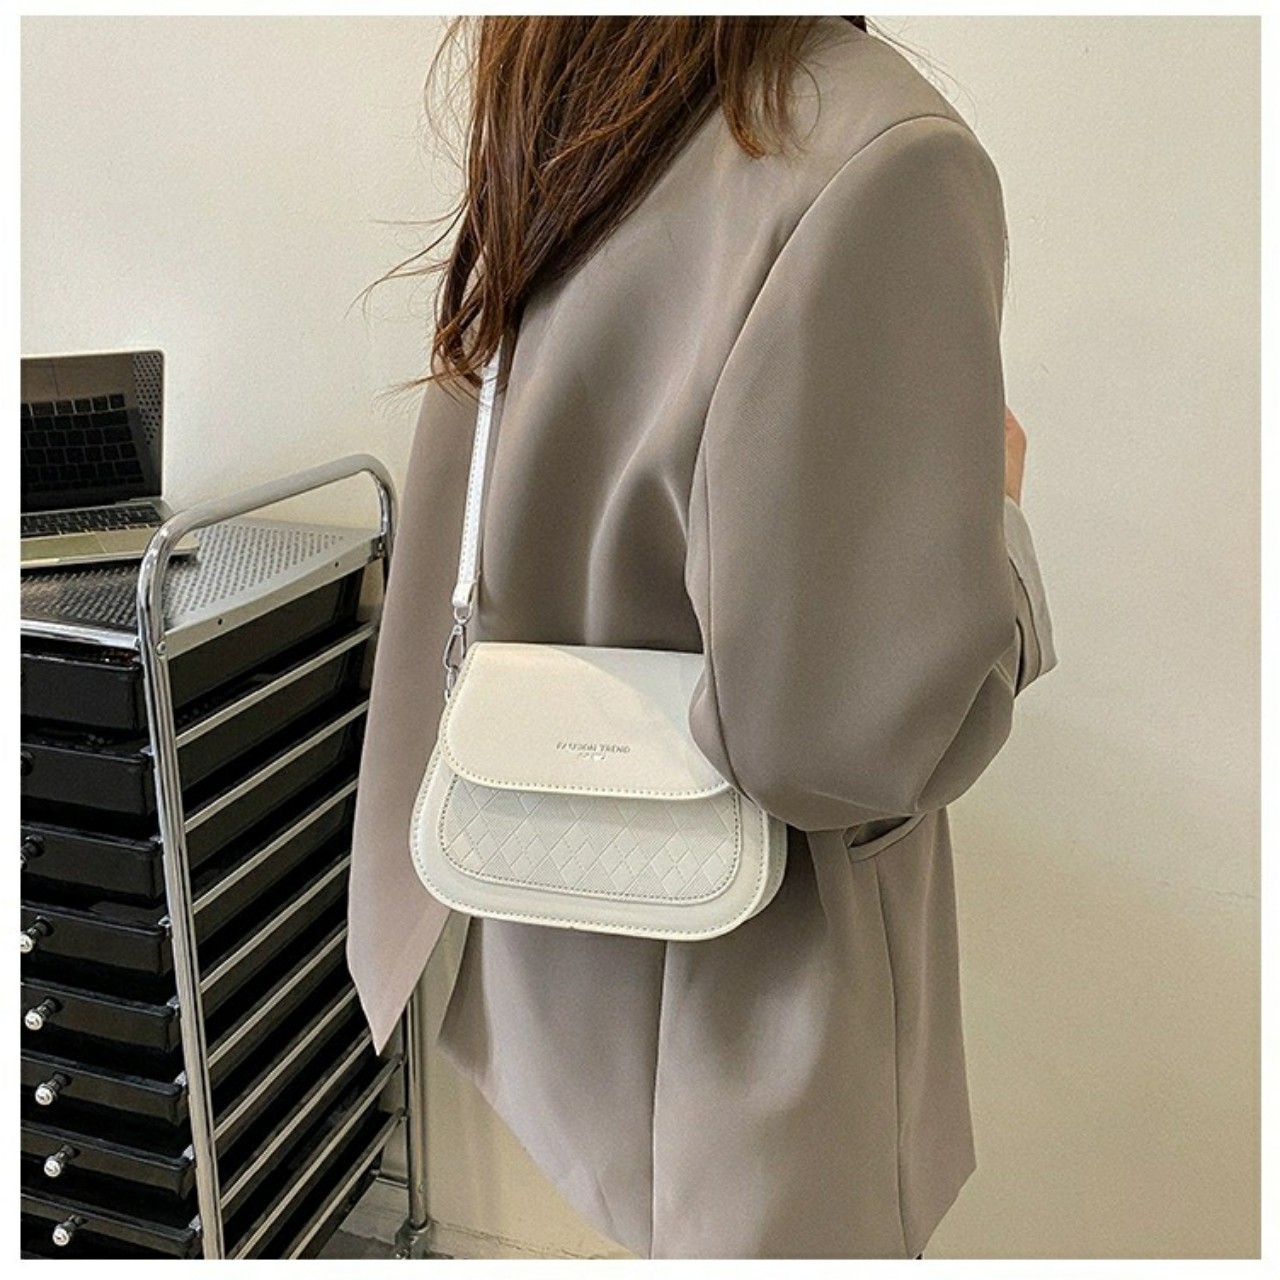 Túi đeo chéo đeo vai túi cầm tay túi mini caro thời trang phong cách Hàn Quốc TXCARO01